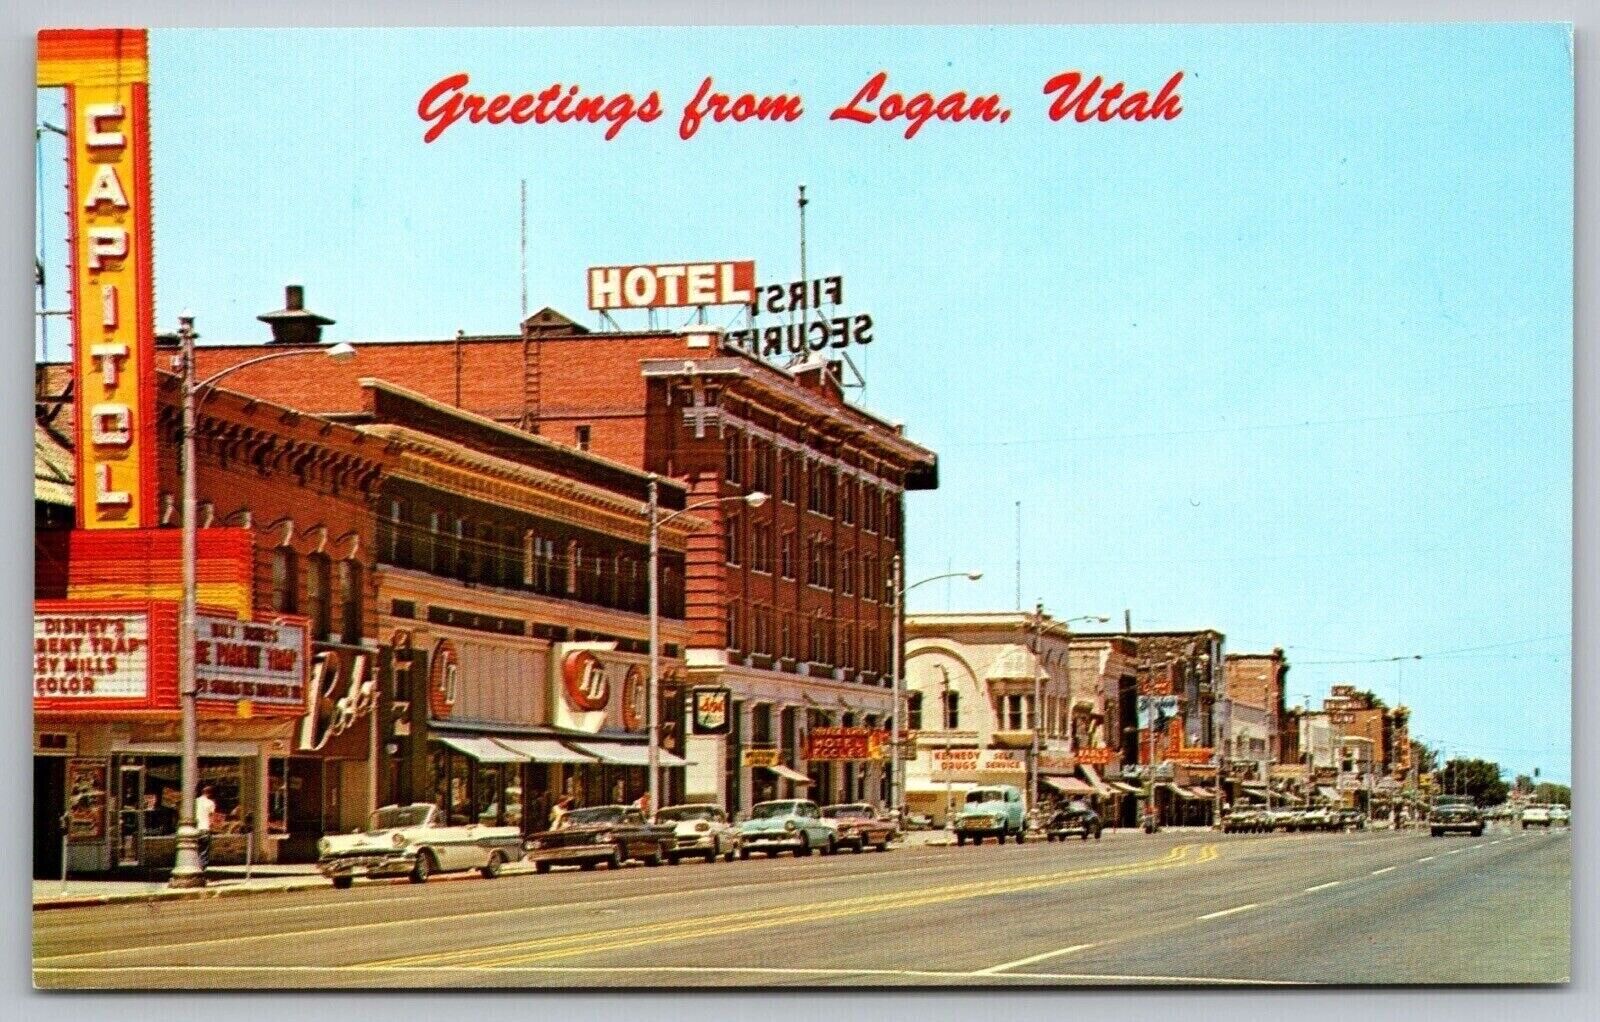 Greetings Logan Utah Hotel Cache Valley Street View Old Car Vintage UNP Postcard